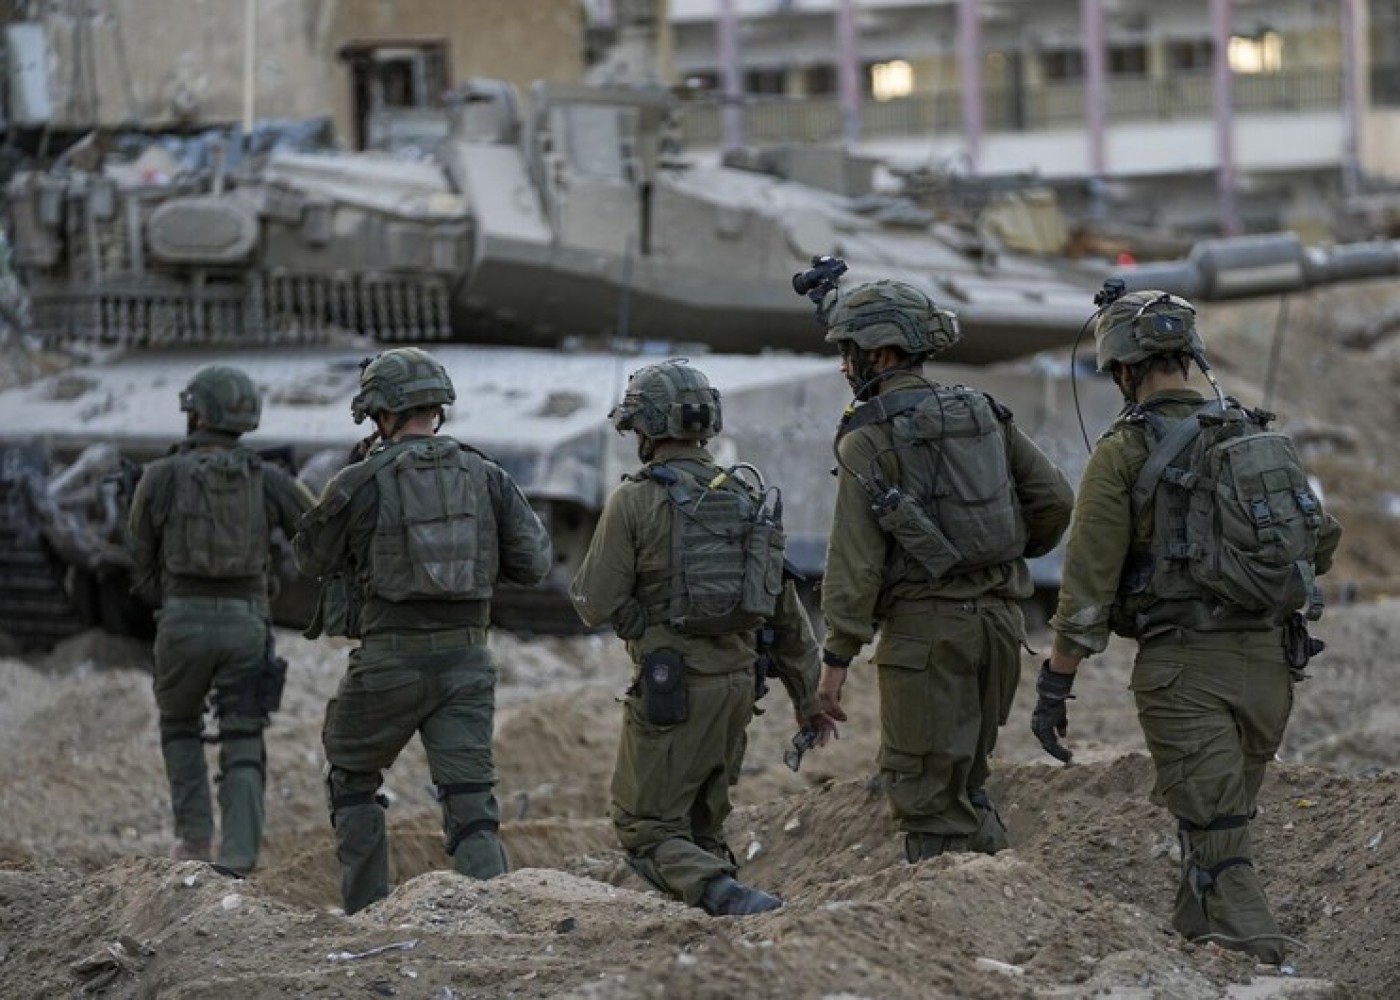 HƏMAS-ın liderlərindən biri məhv edilib -İsrail ordusu